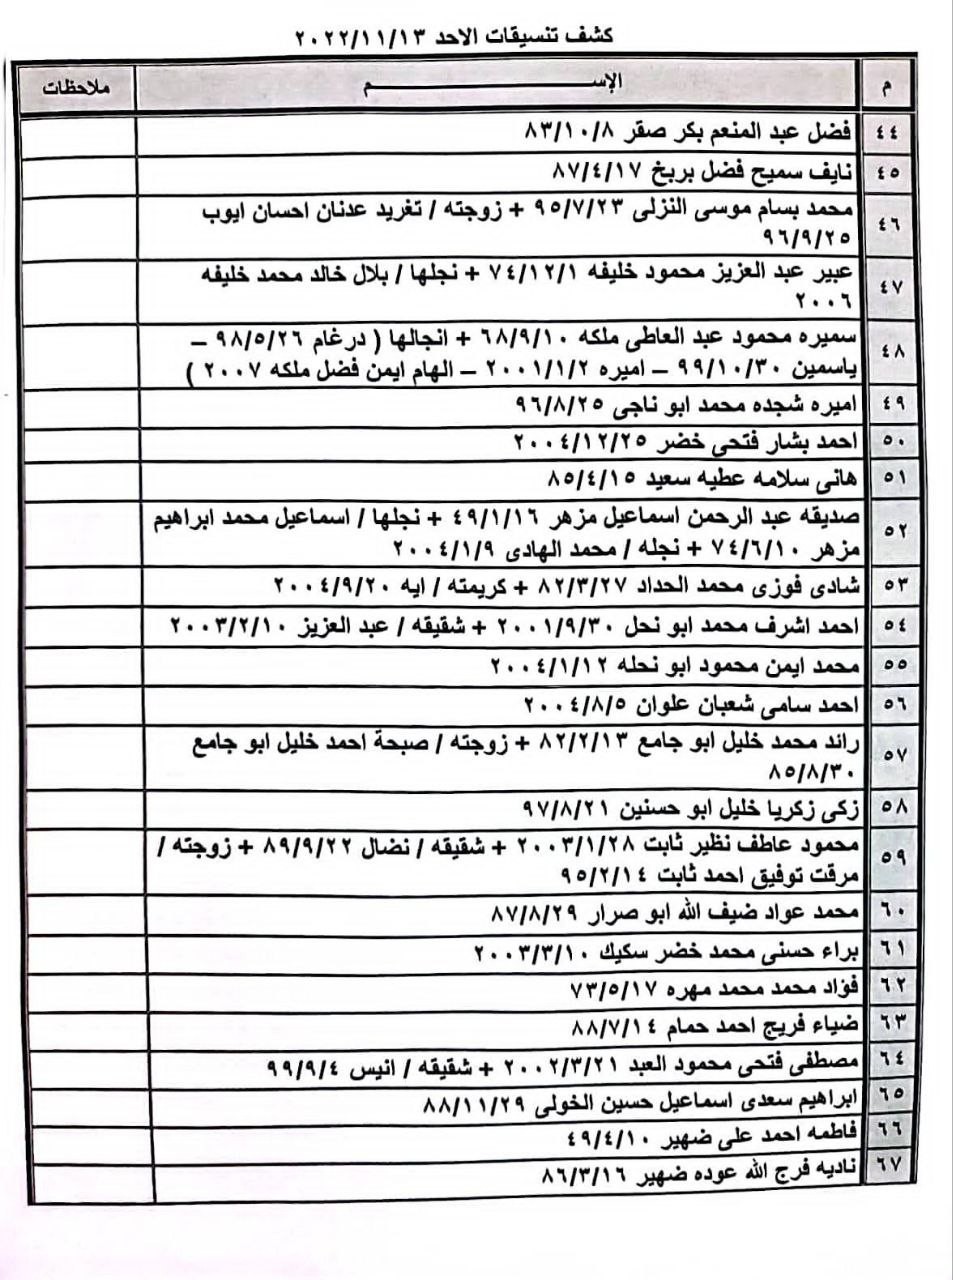 بالأسماء: كشف تنسيقات مصرية للسفر عبر معبر رفح يوم الأحد 13 نوفمبر